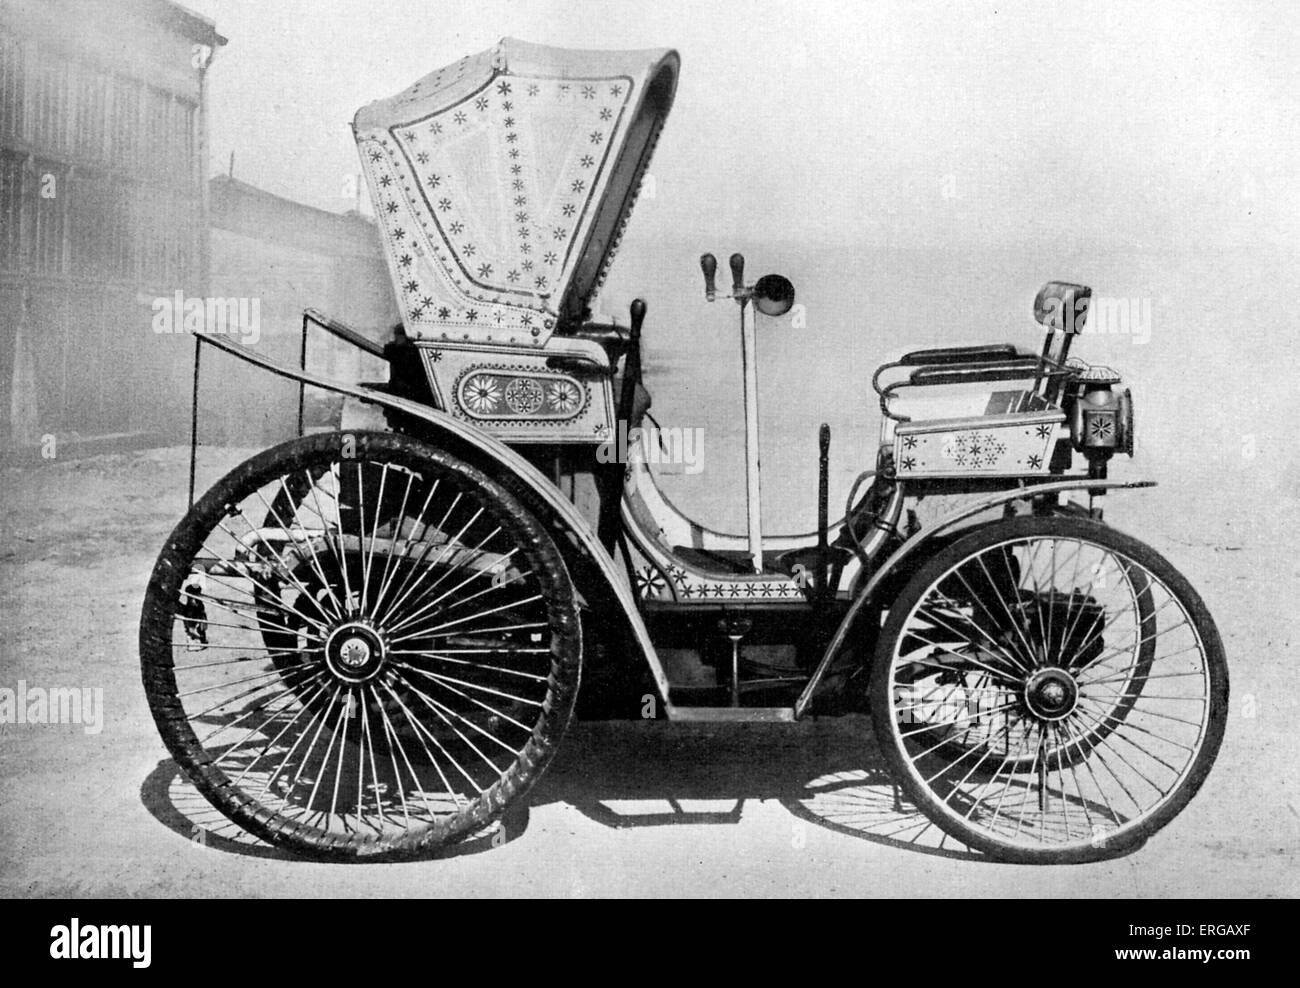 Peugeot de 1849, administré par le Bey (Gouverneur) de Tunis. 3/4 moteur 2CV Panhard. Banque D'Images